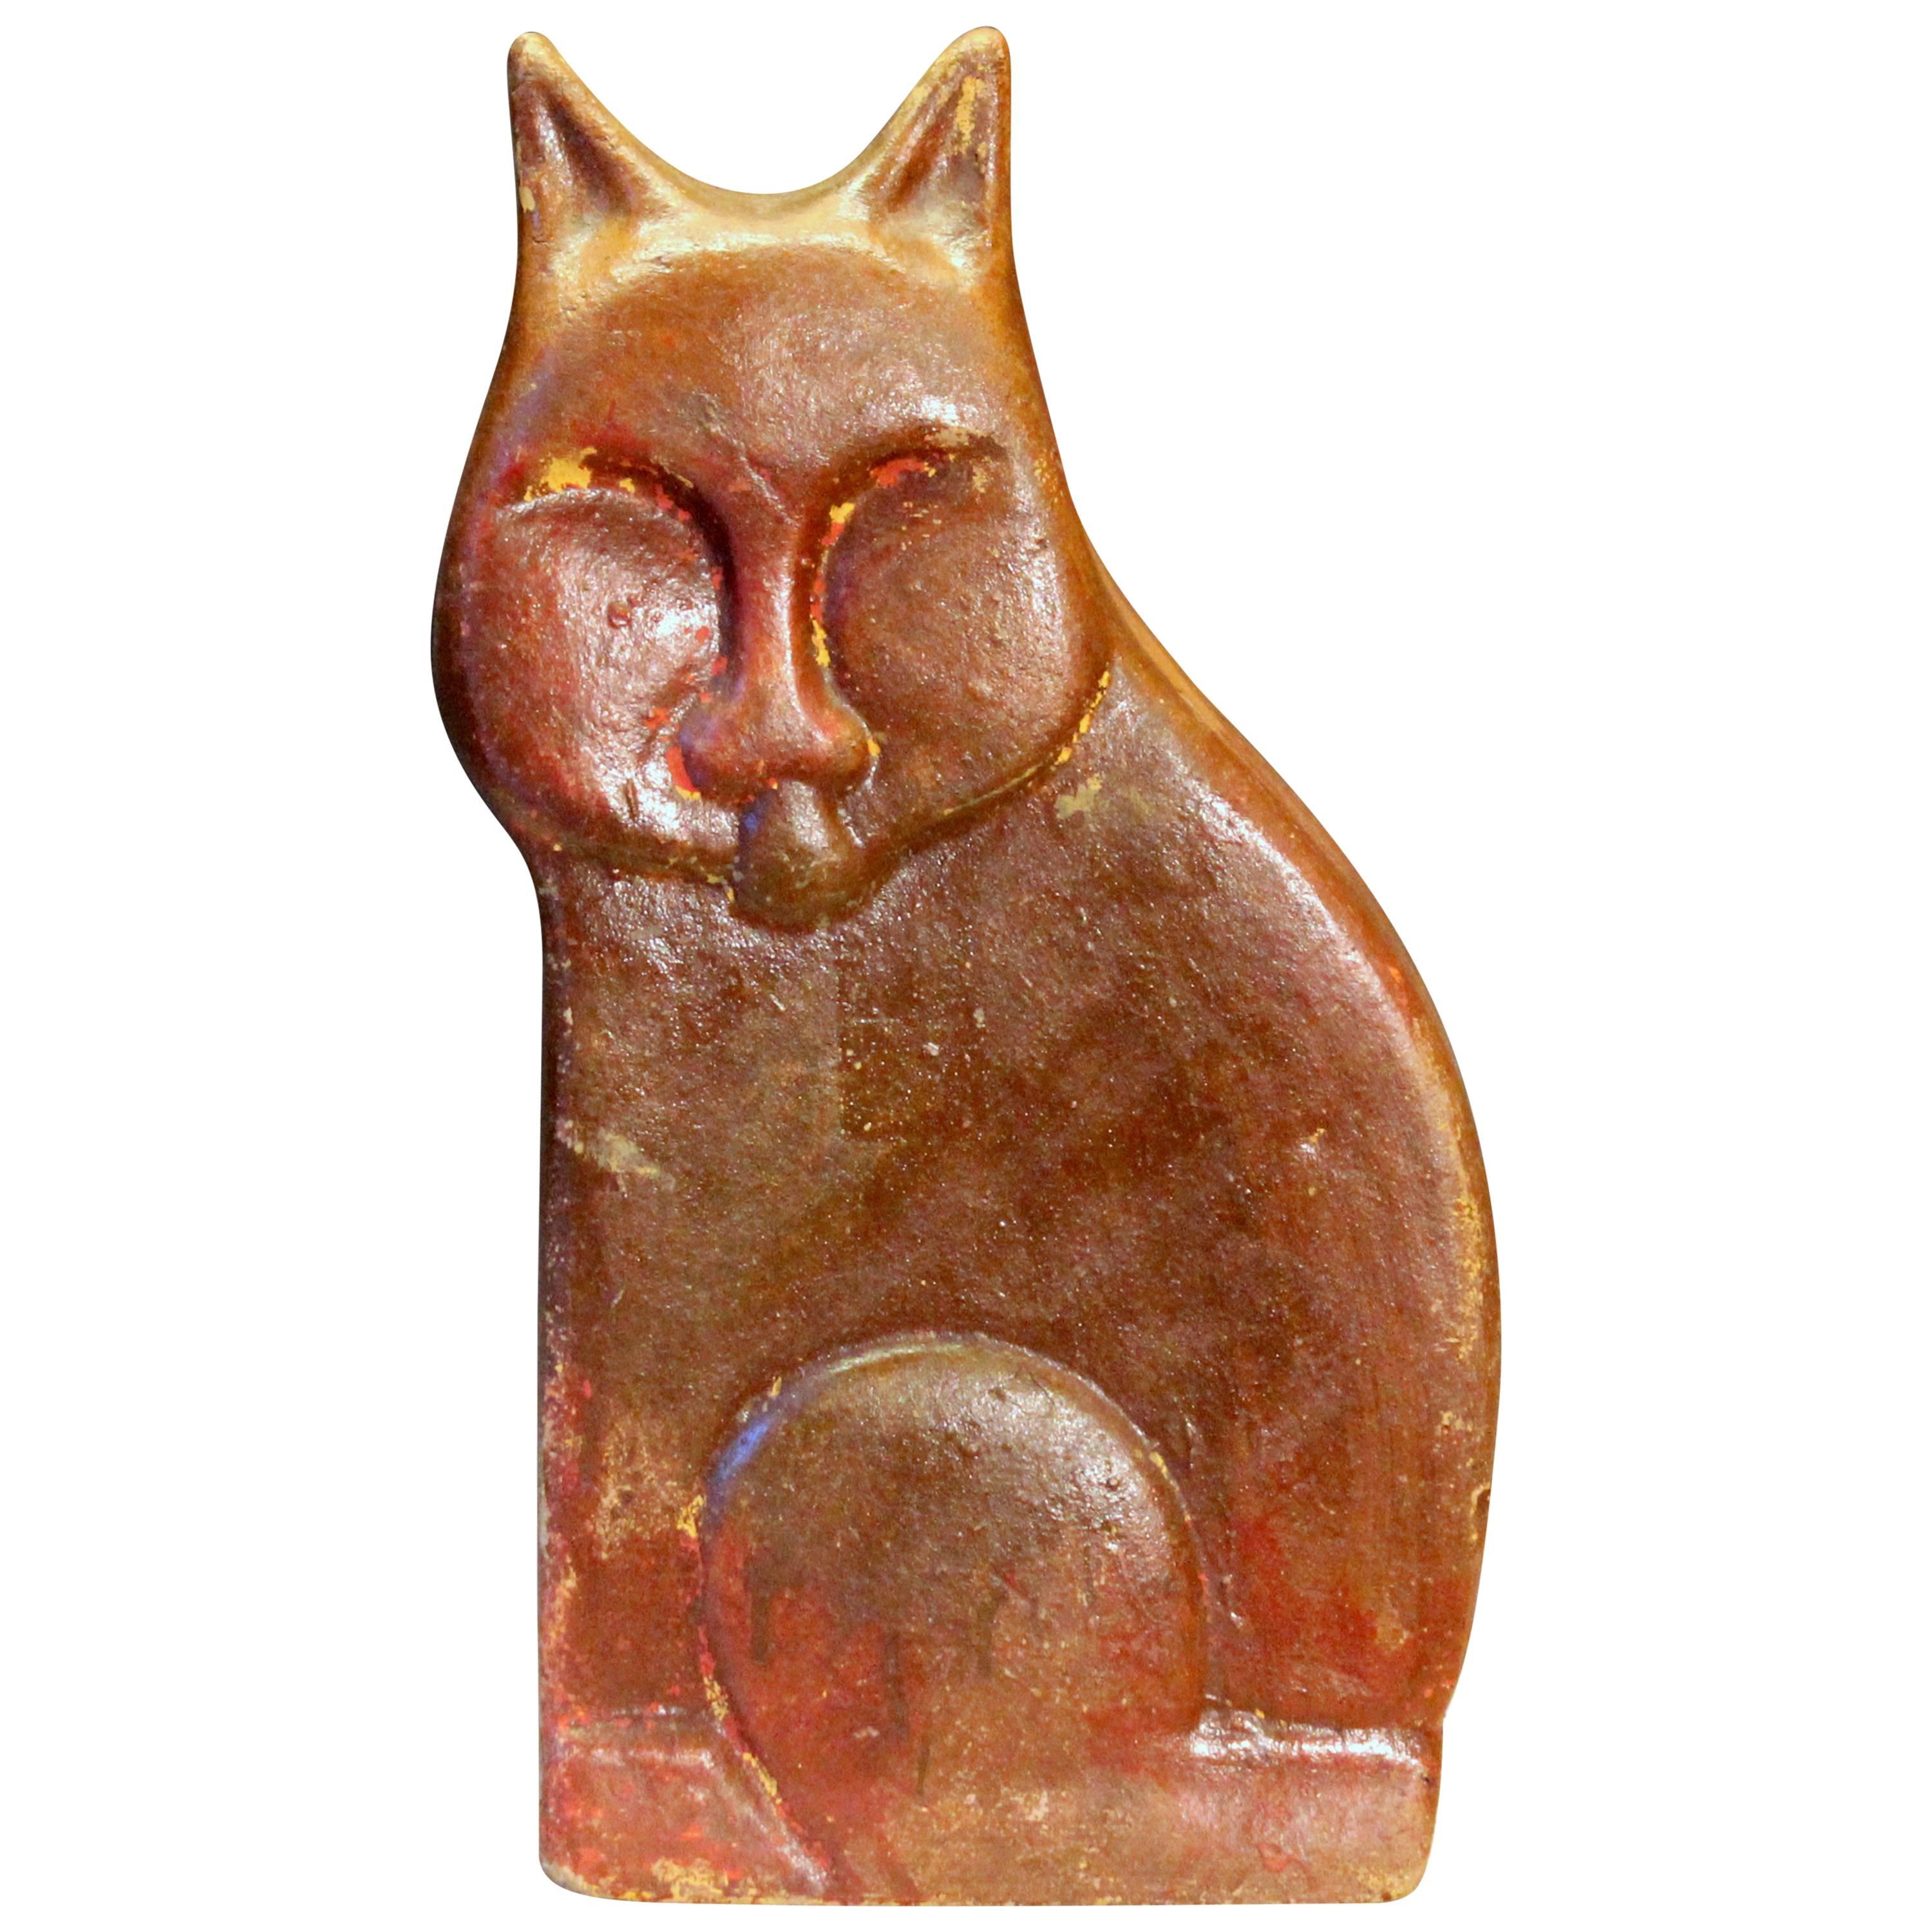 Sculpture de chat de type tuile d'égout en poterie d'art populaire de grande taille, d'époque ou ancienne